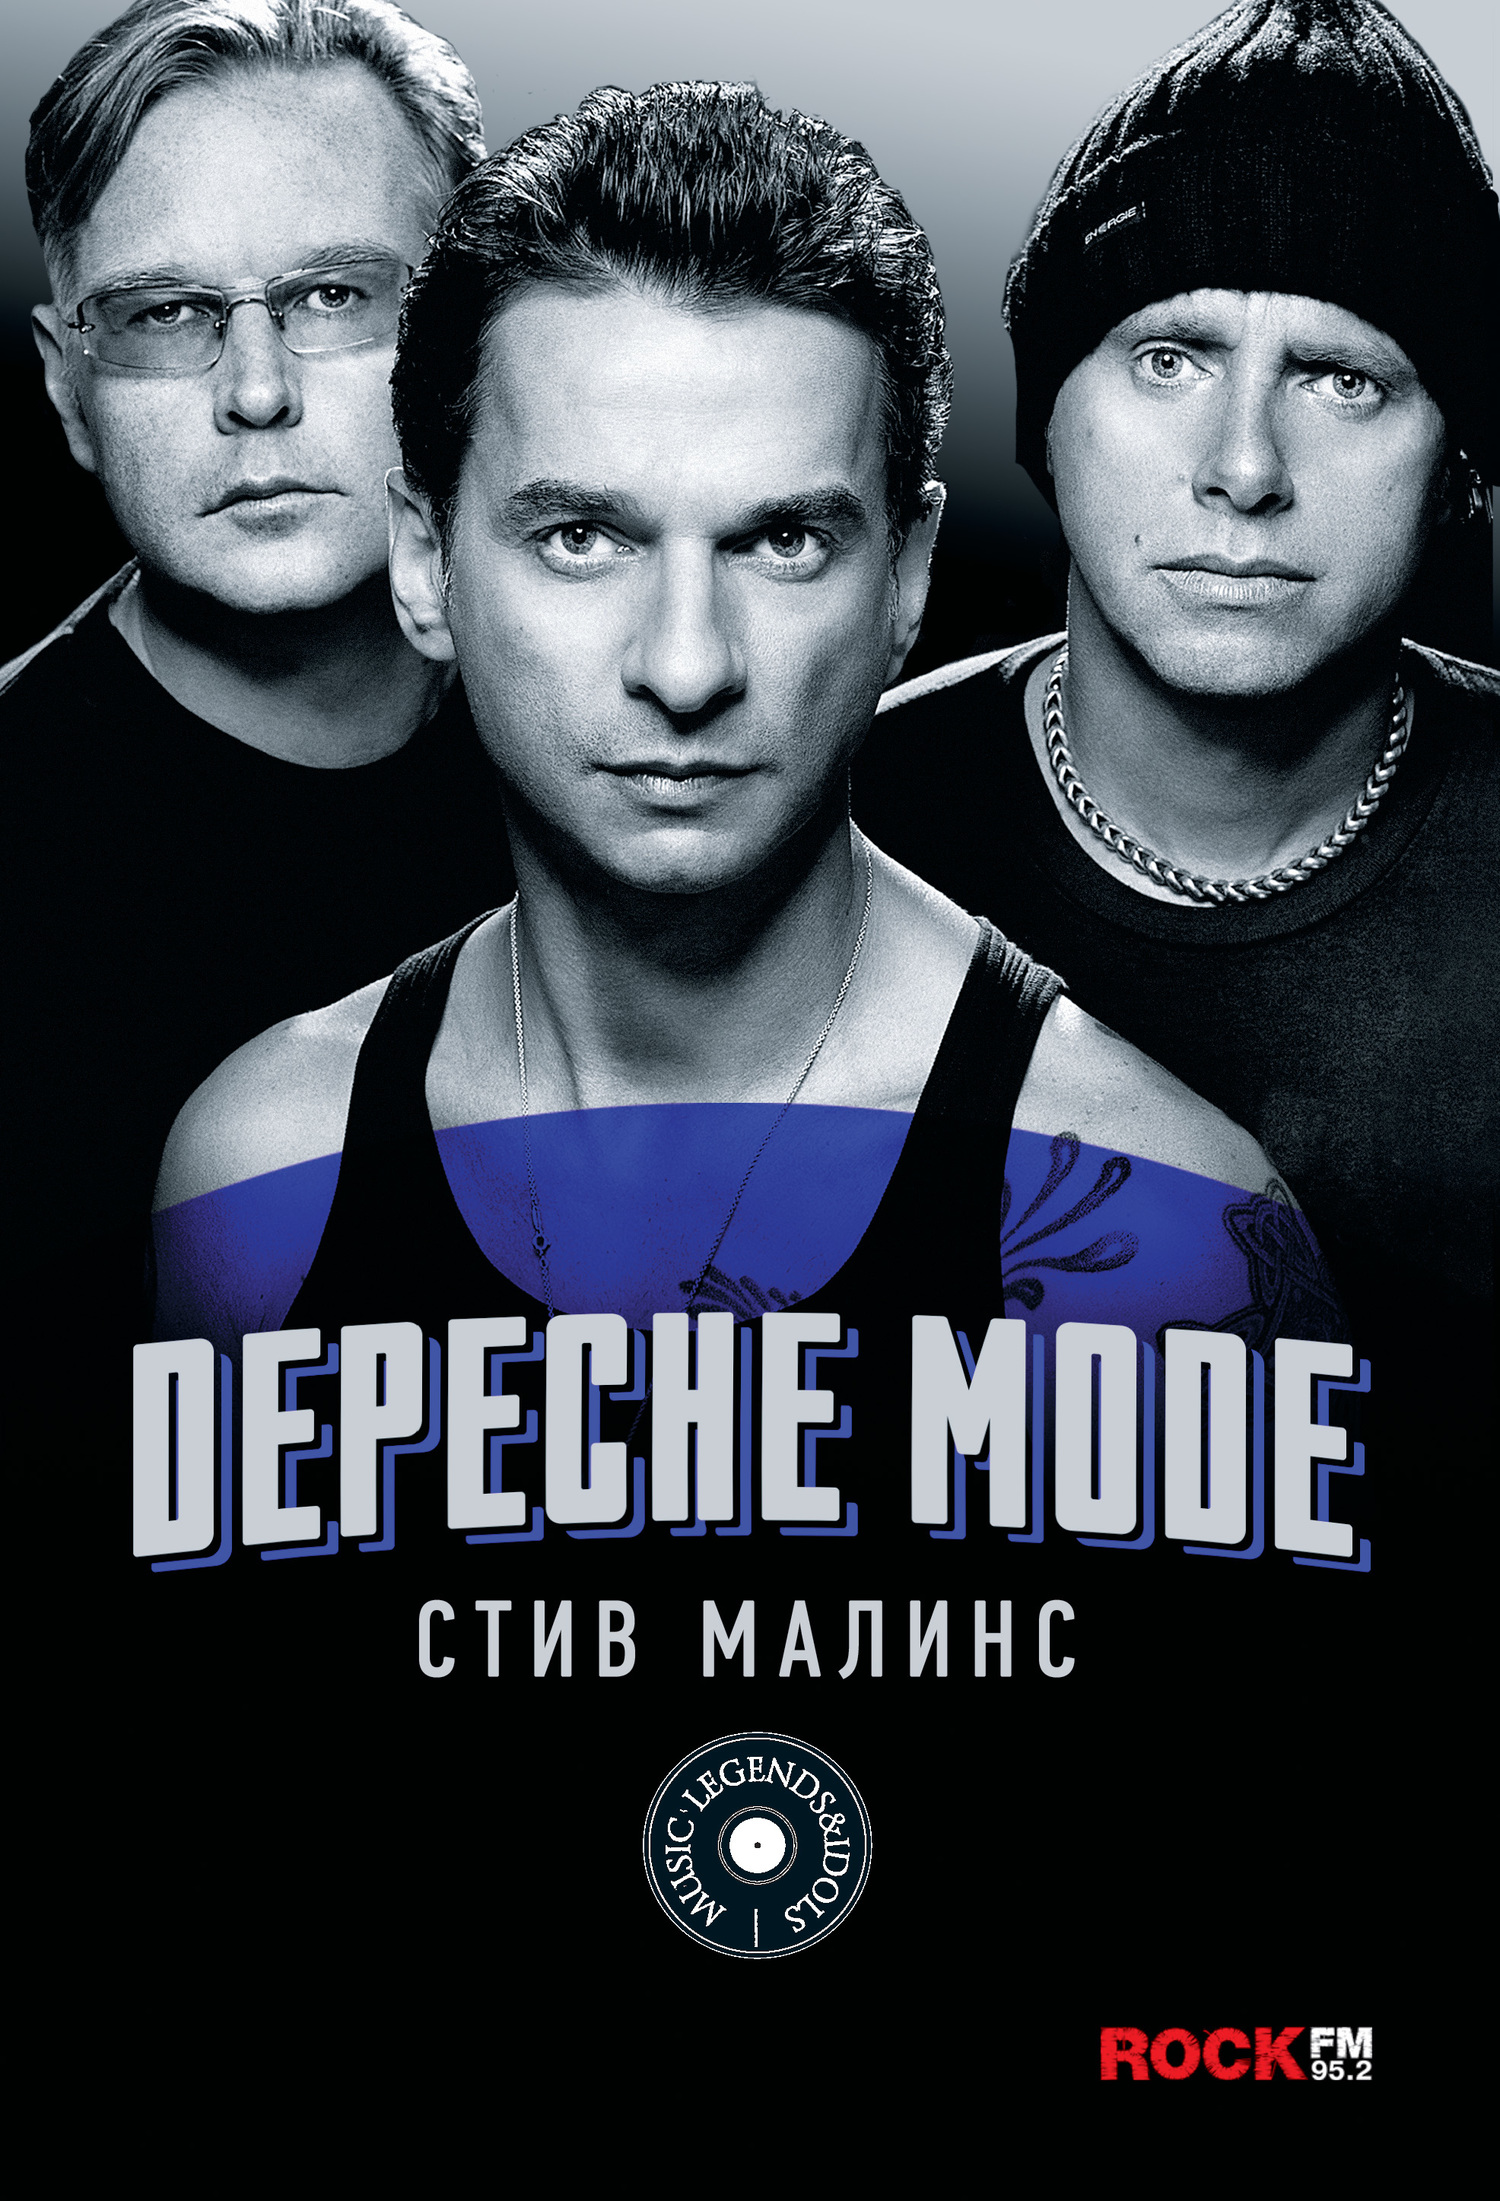 Малинс Стив - Depeche Mode скачать бесплатно